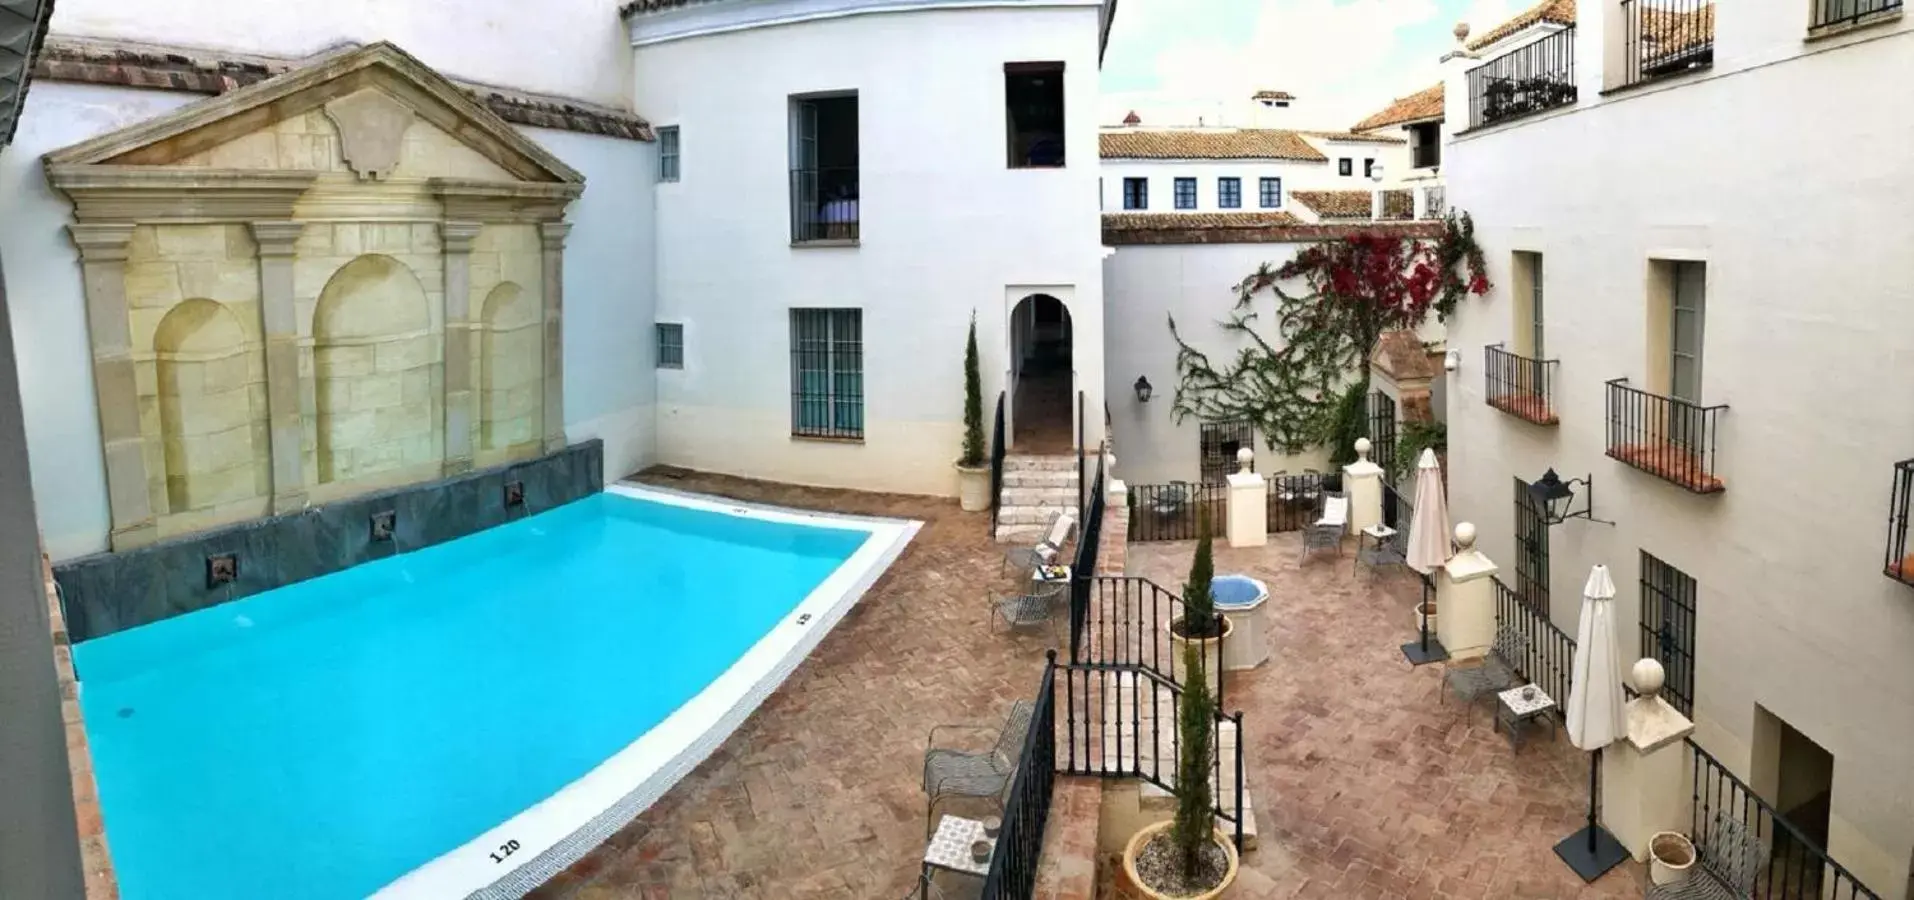 Swimming pool, Pool View in Las Casas de la Judería de Córdoba